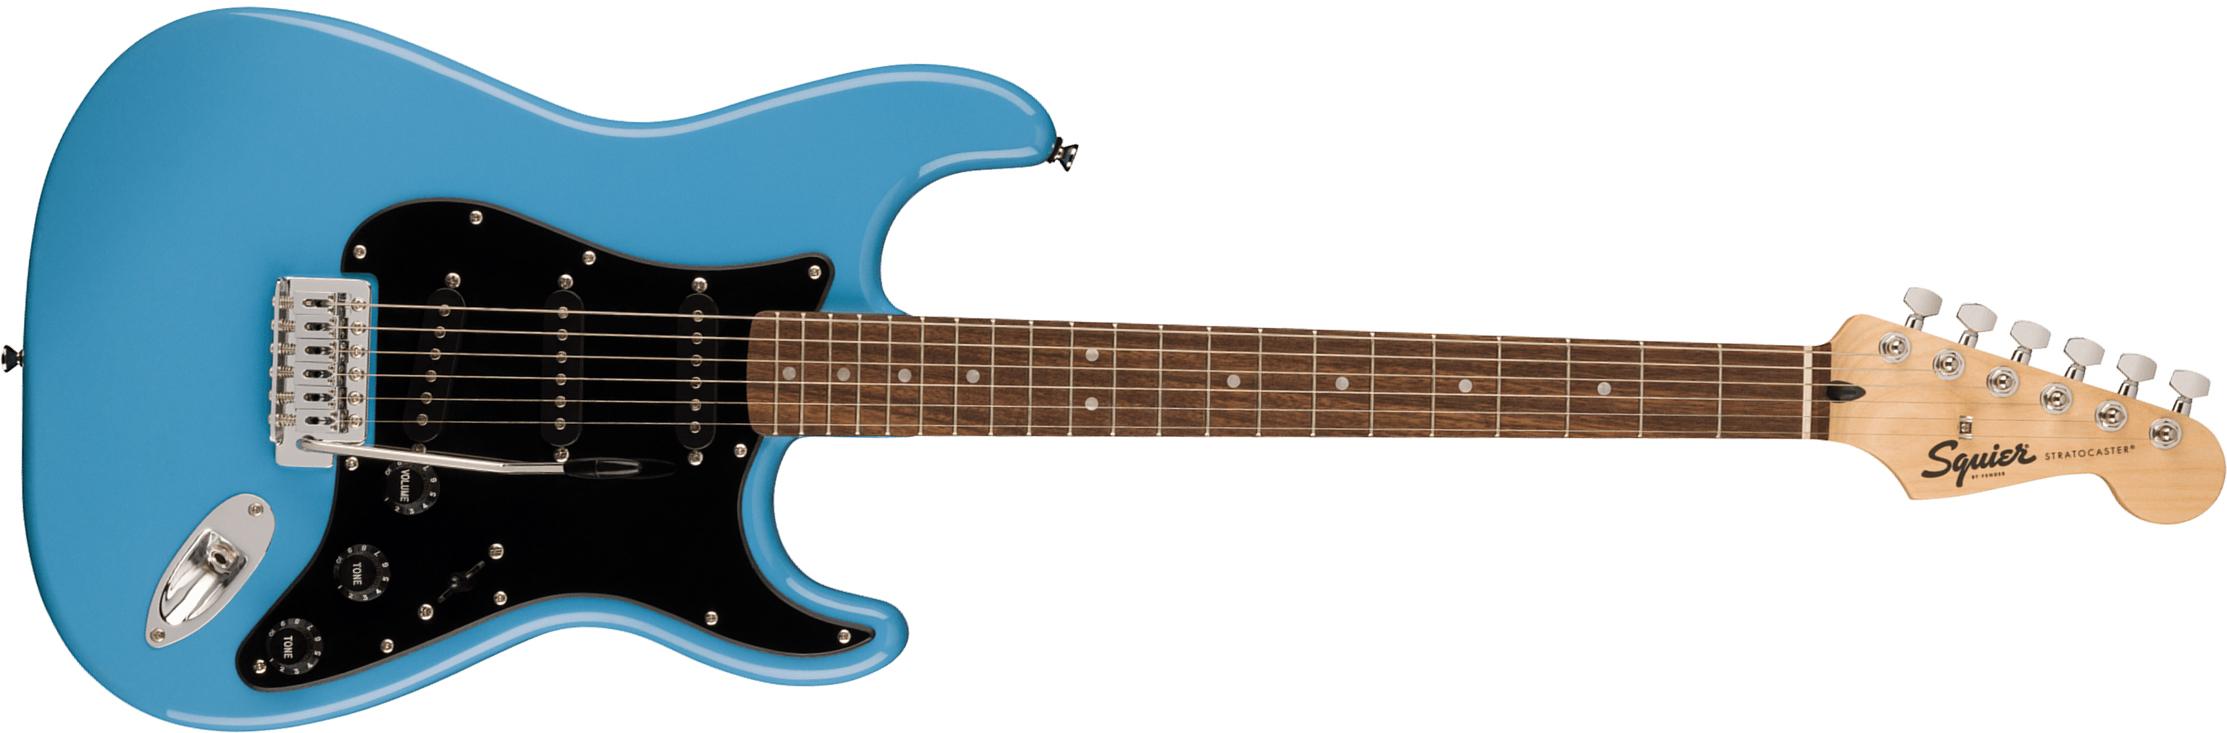 Squier Strat Sonic 3s Trem Lau - California Blue - Str shape electric guitar - Main picture